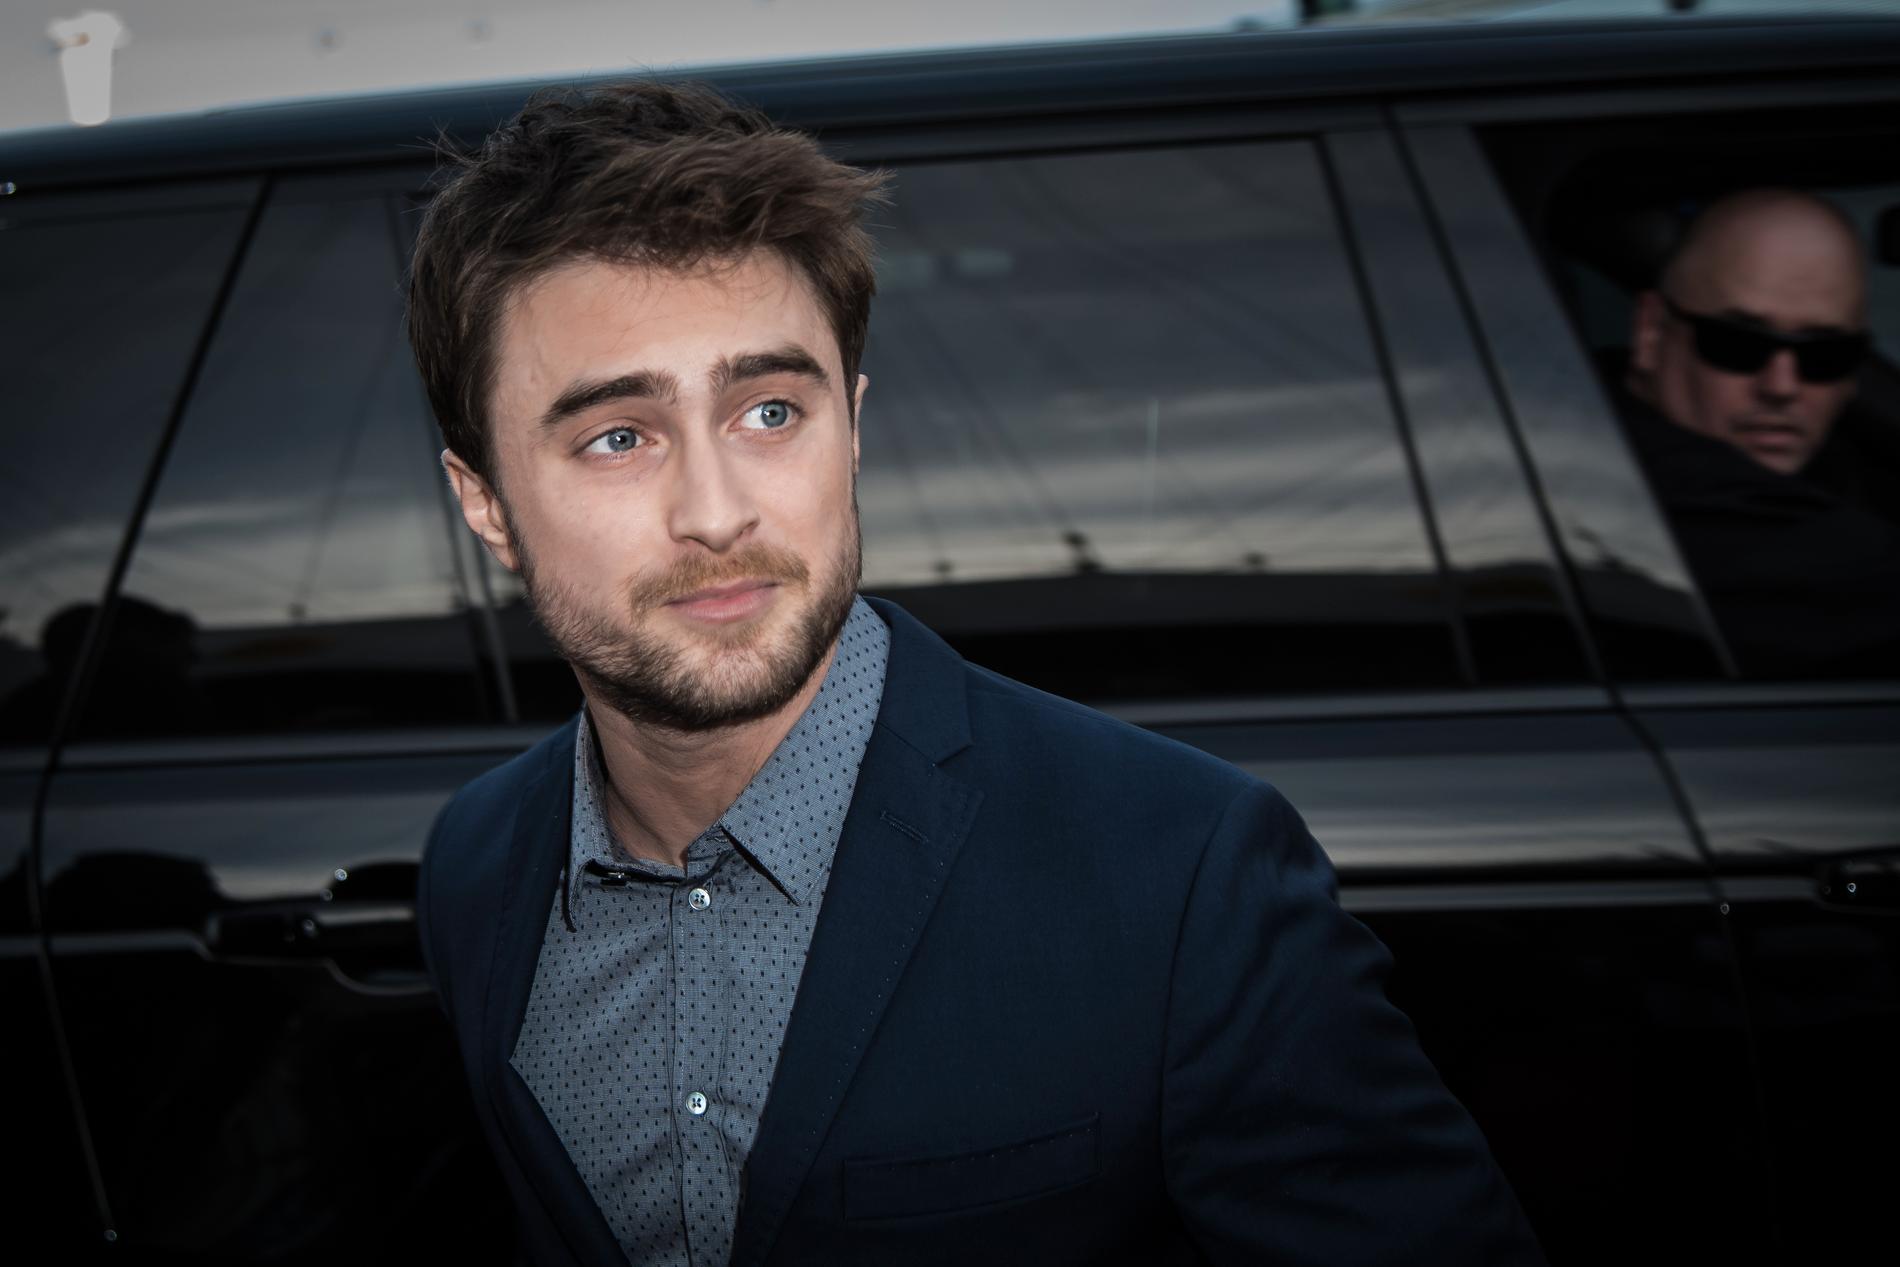 Daniel Radcliffe, 31, som spelade Harry Potter i filmerna, var först med att ta avstånd från författaren som lagt grunden för hans karriär och enorma förmögenhet.